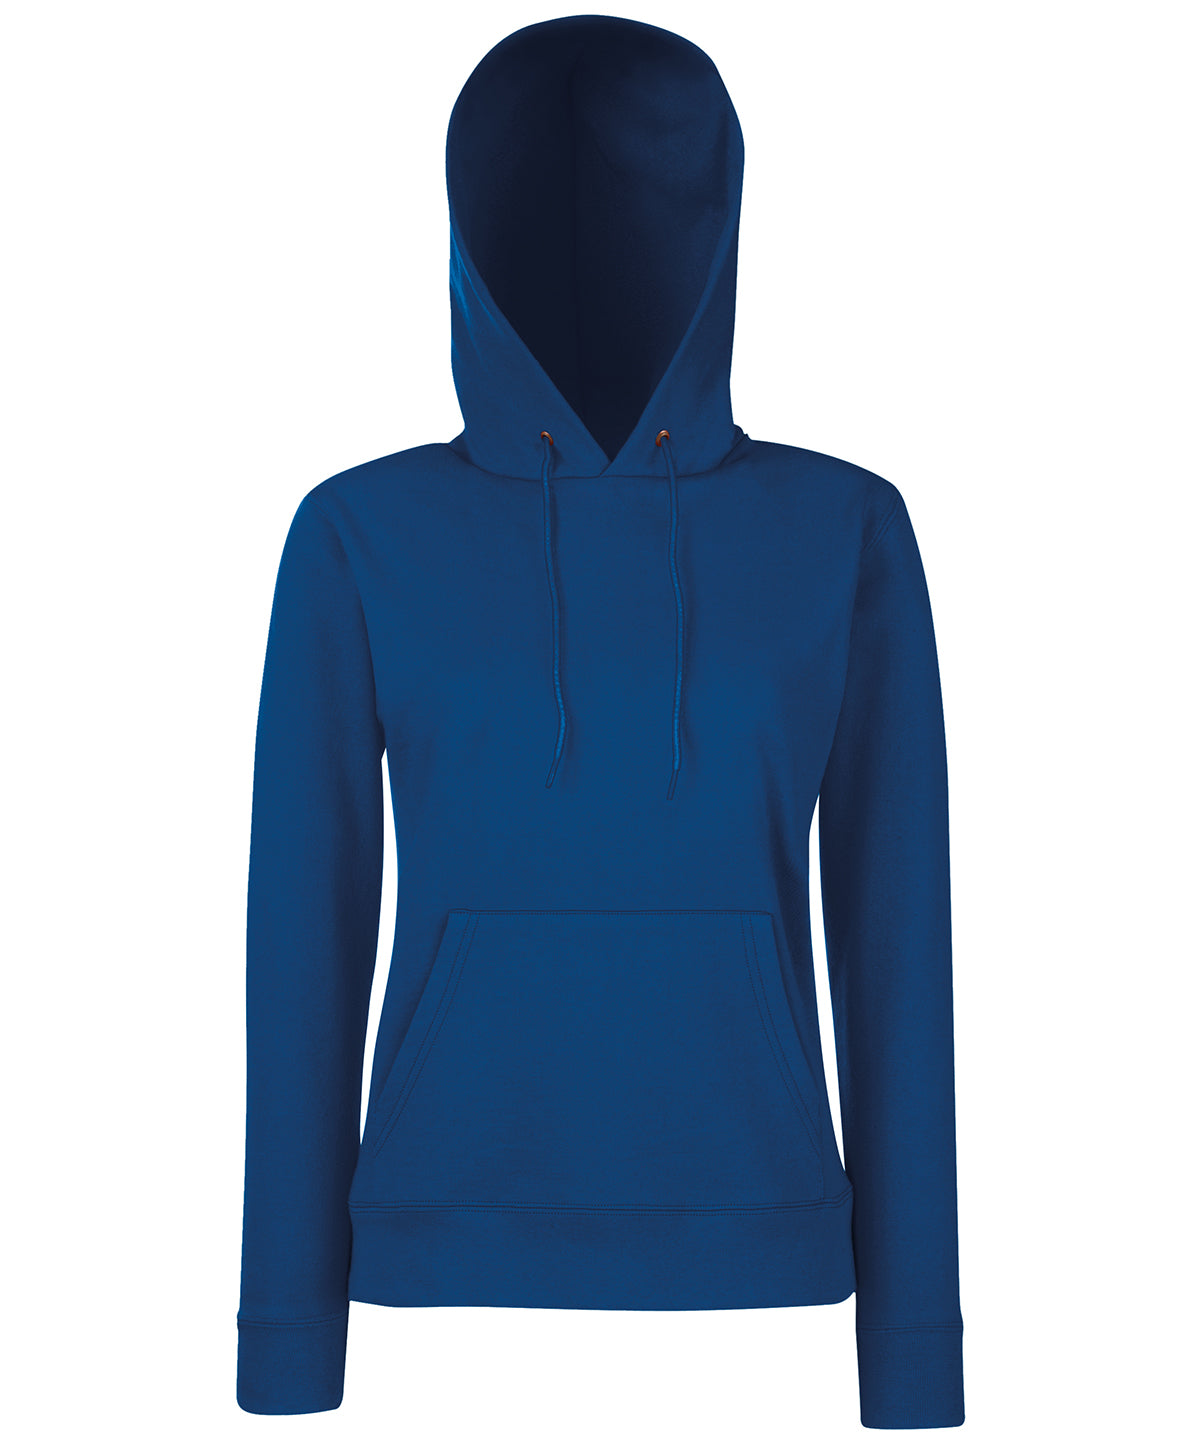 Personalised Hoodies - Black Fruit of the Loom Women's Classic 80/20 hooded sweatshirt